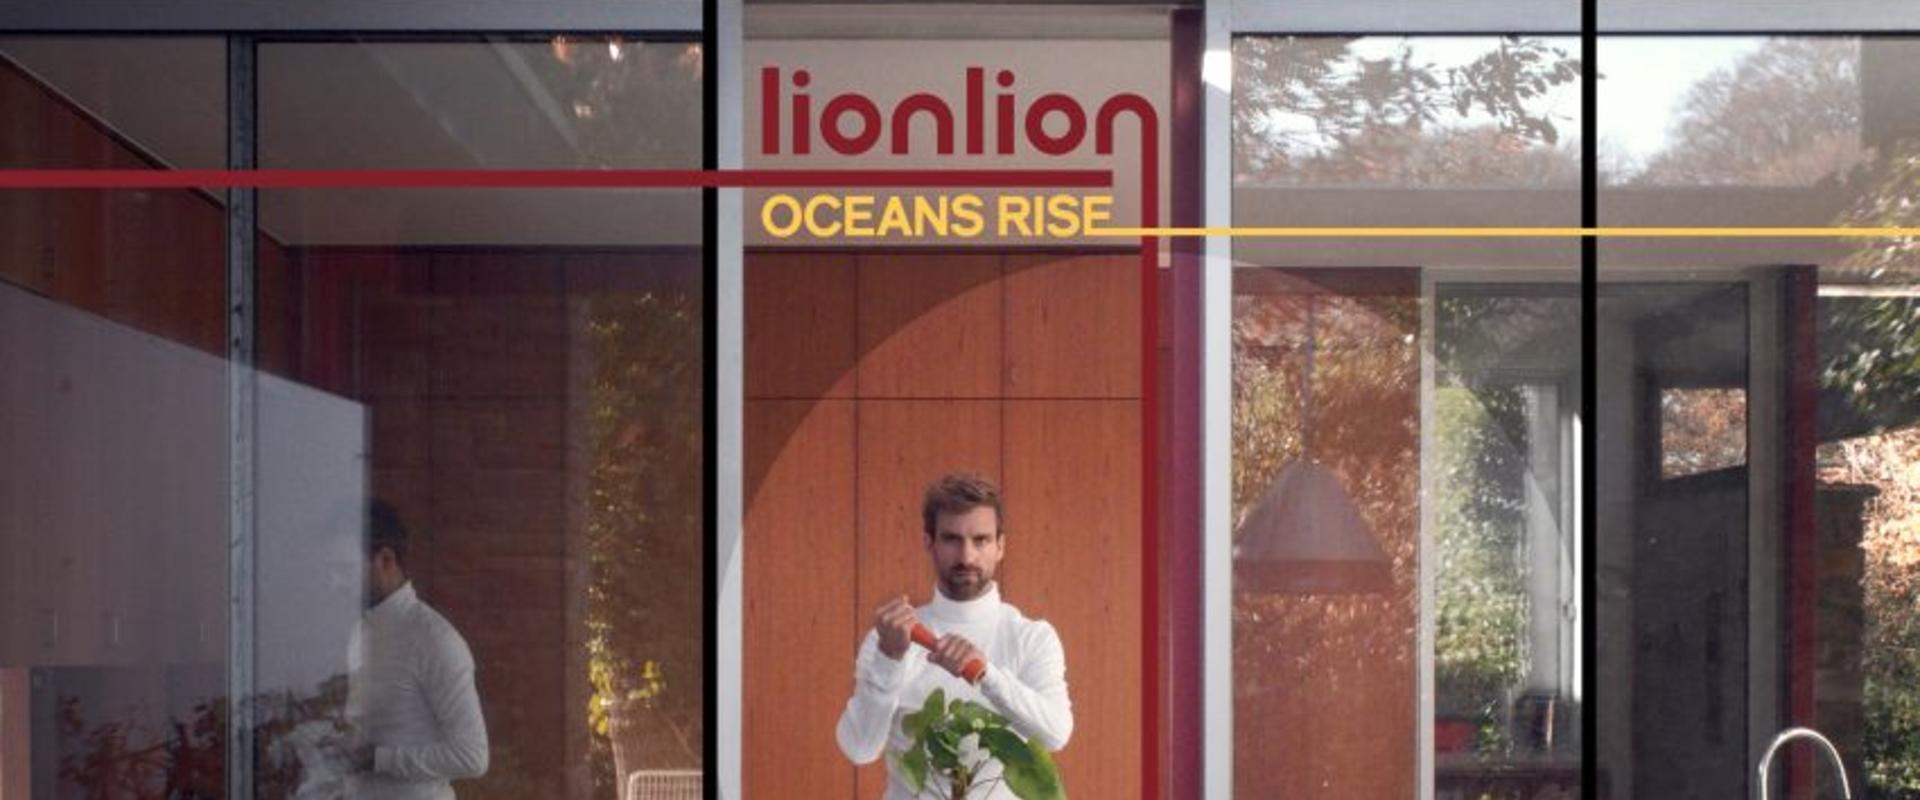 Lionlion – Oceans Rise